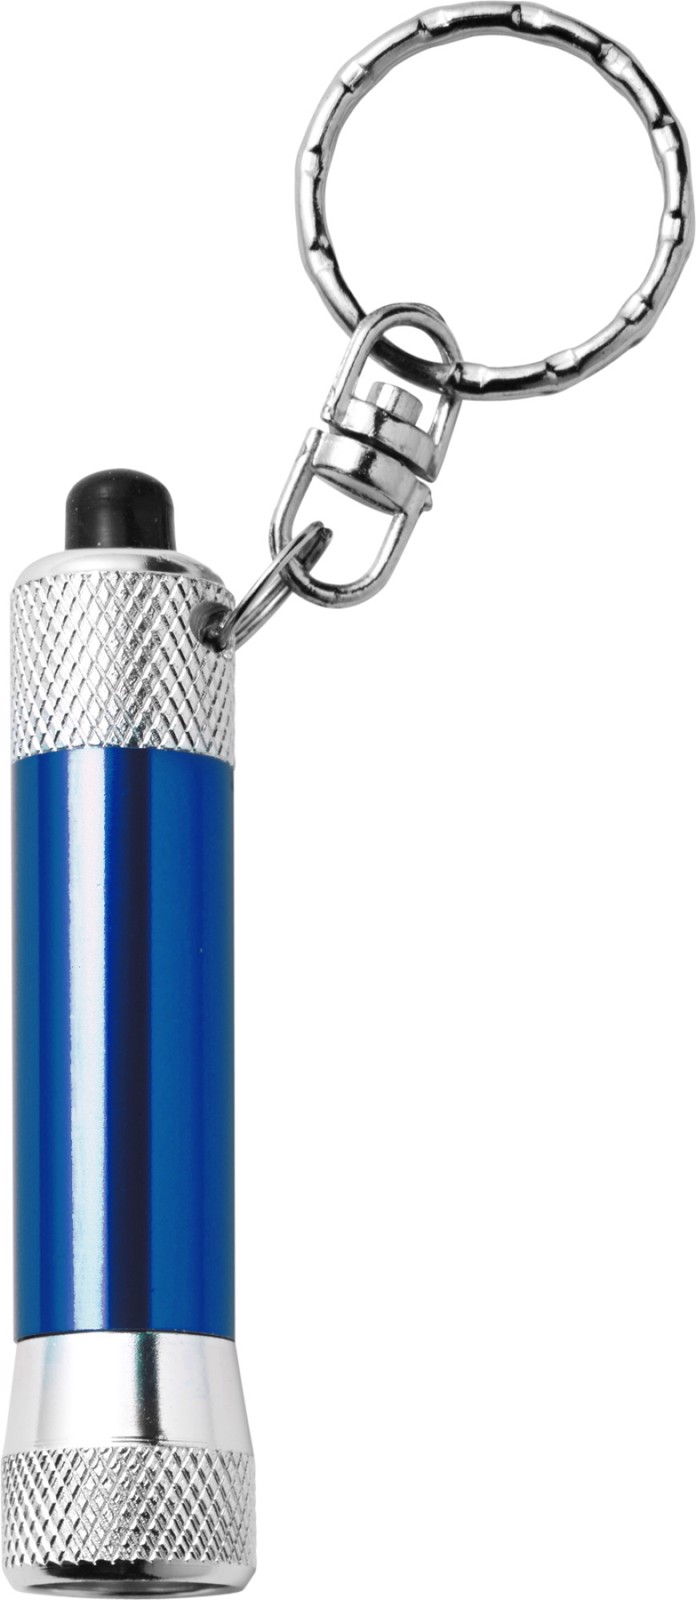 Aluminium 2-in-1 key holder - Cobalt Blue